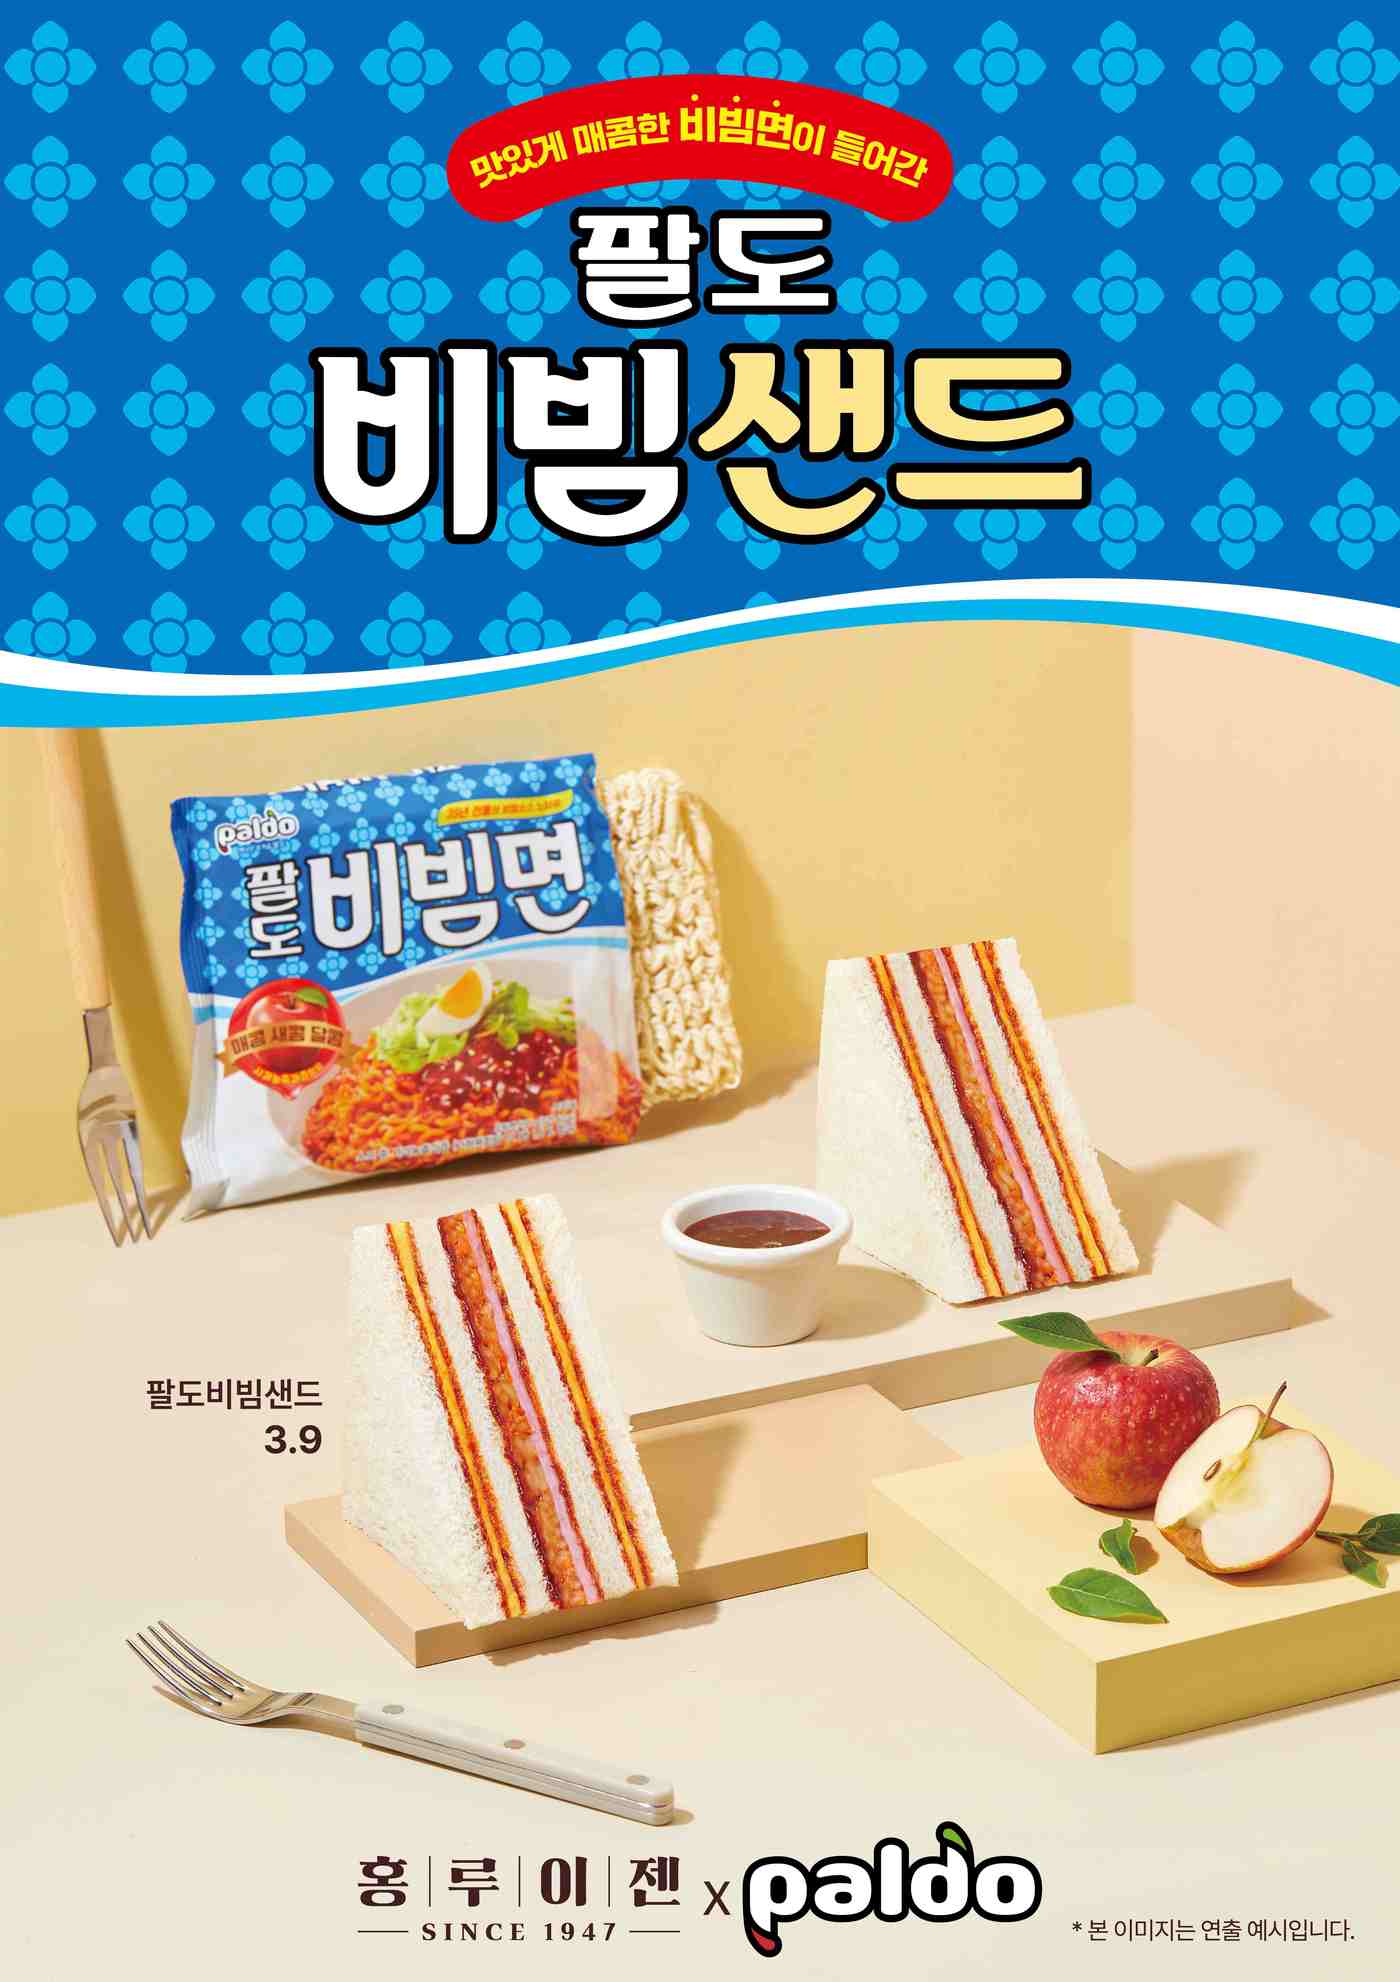 팔도비빔면이 샌드위치로…홍루이젠, 컬래버 여름 시즌 메뉴 출시